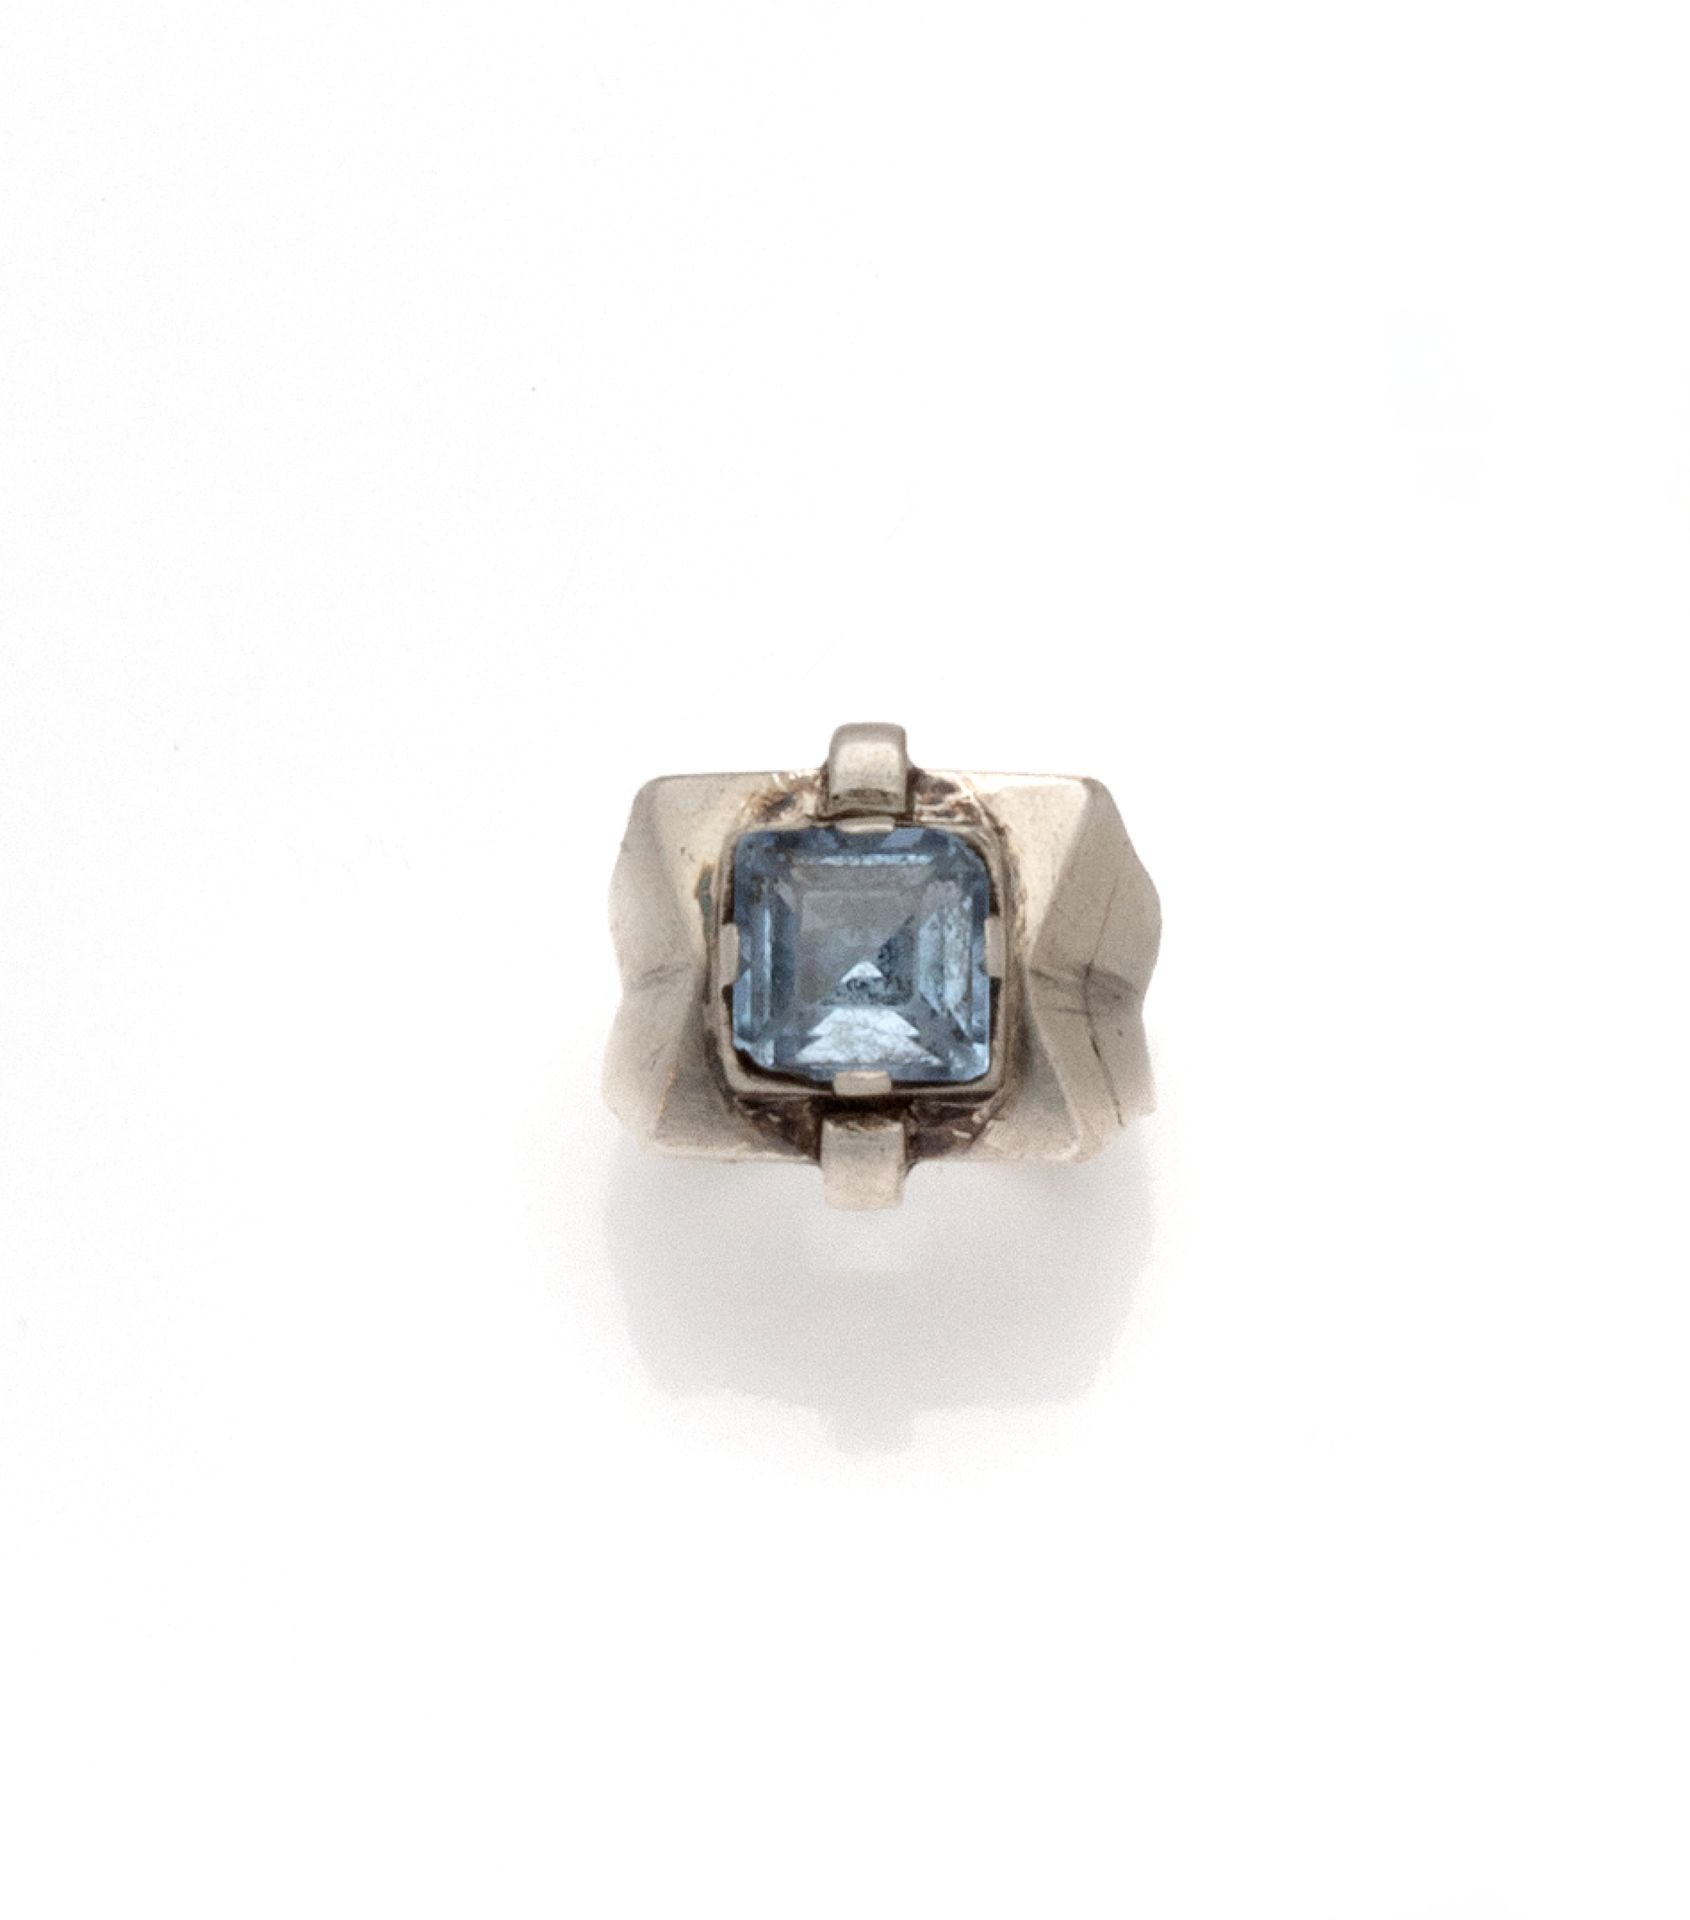 Null 
装饰艺术风格的银戒指（800/1000），中心是一颗封闭式的方形蓝宝石，肩部有两个小环。戒指被捏住形成一个雪佛龙。

法国作品，并有大师的标记痕迹。&hellip;